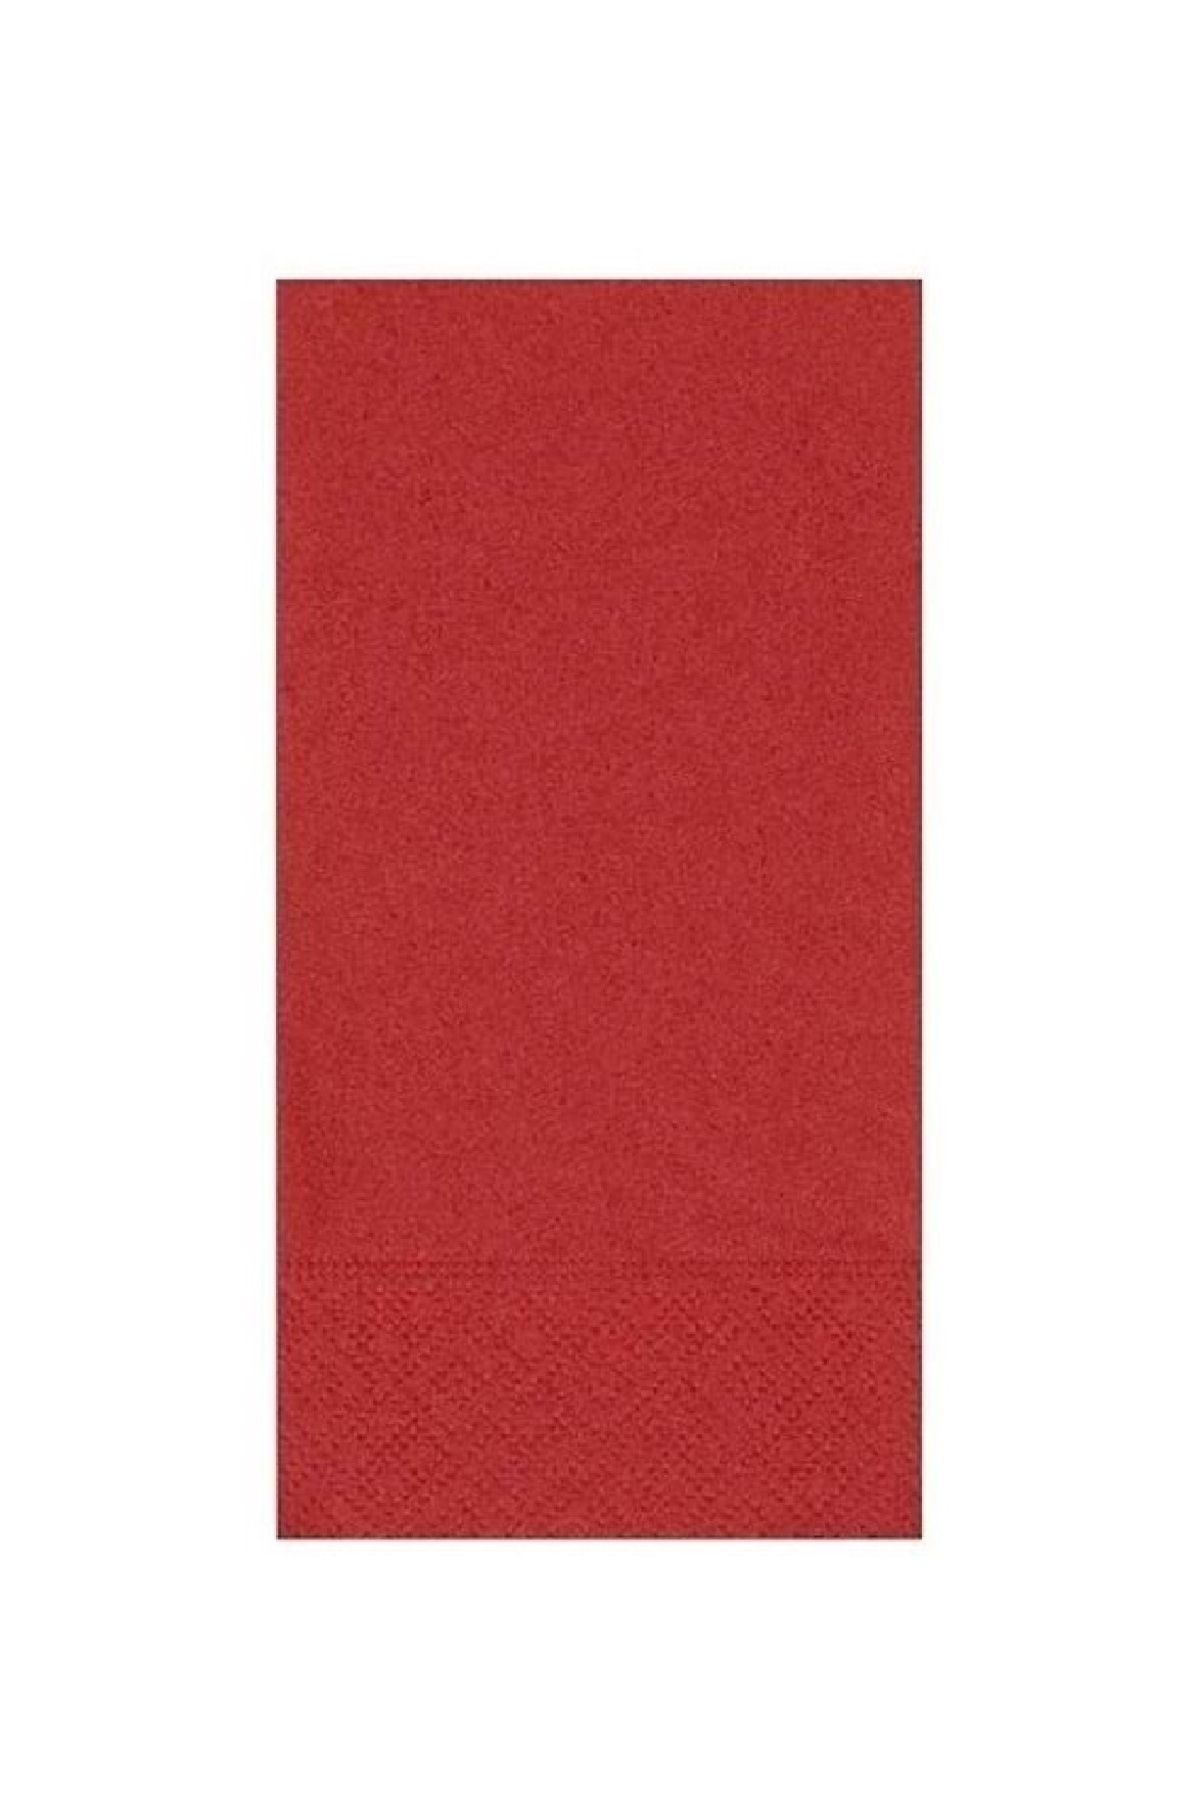 NapkinStore Kırmızı Peçete 20'li Paket 33x33 1/8 Çift Katlı